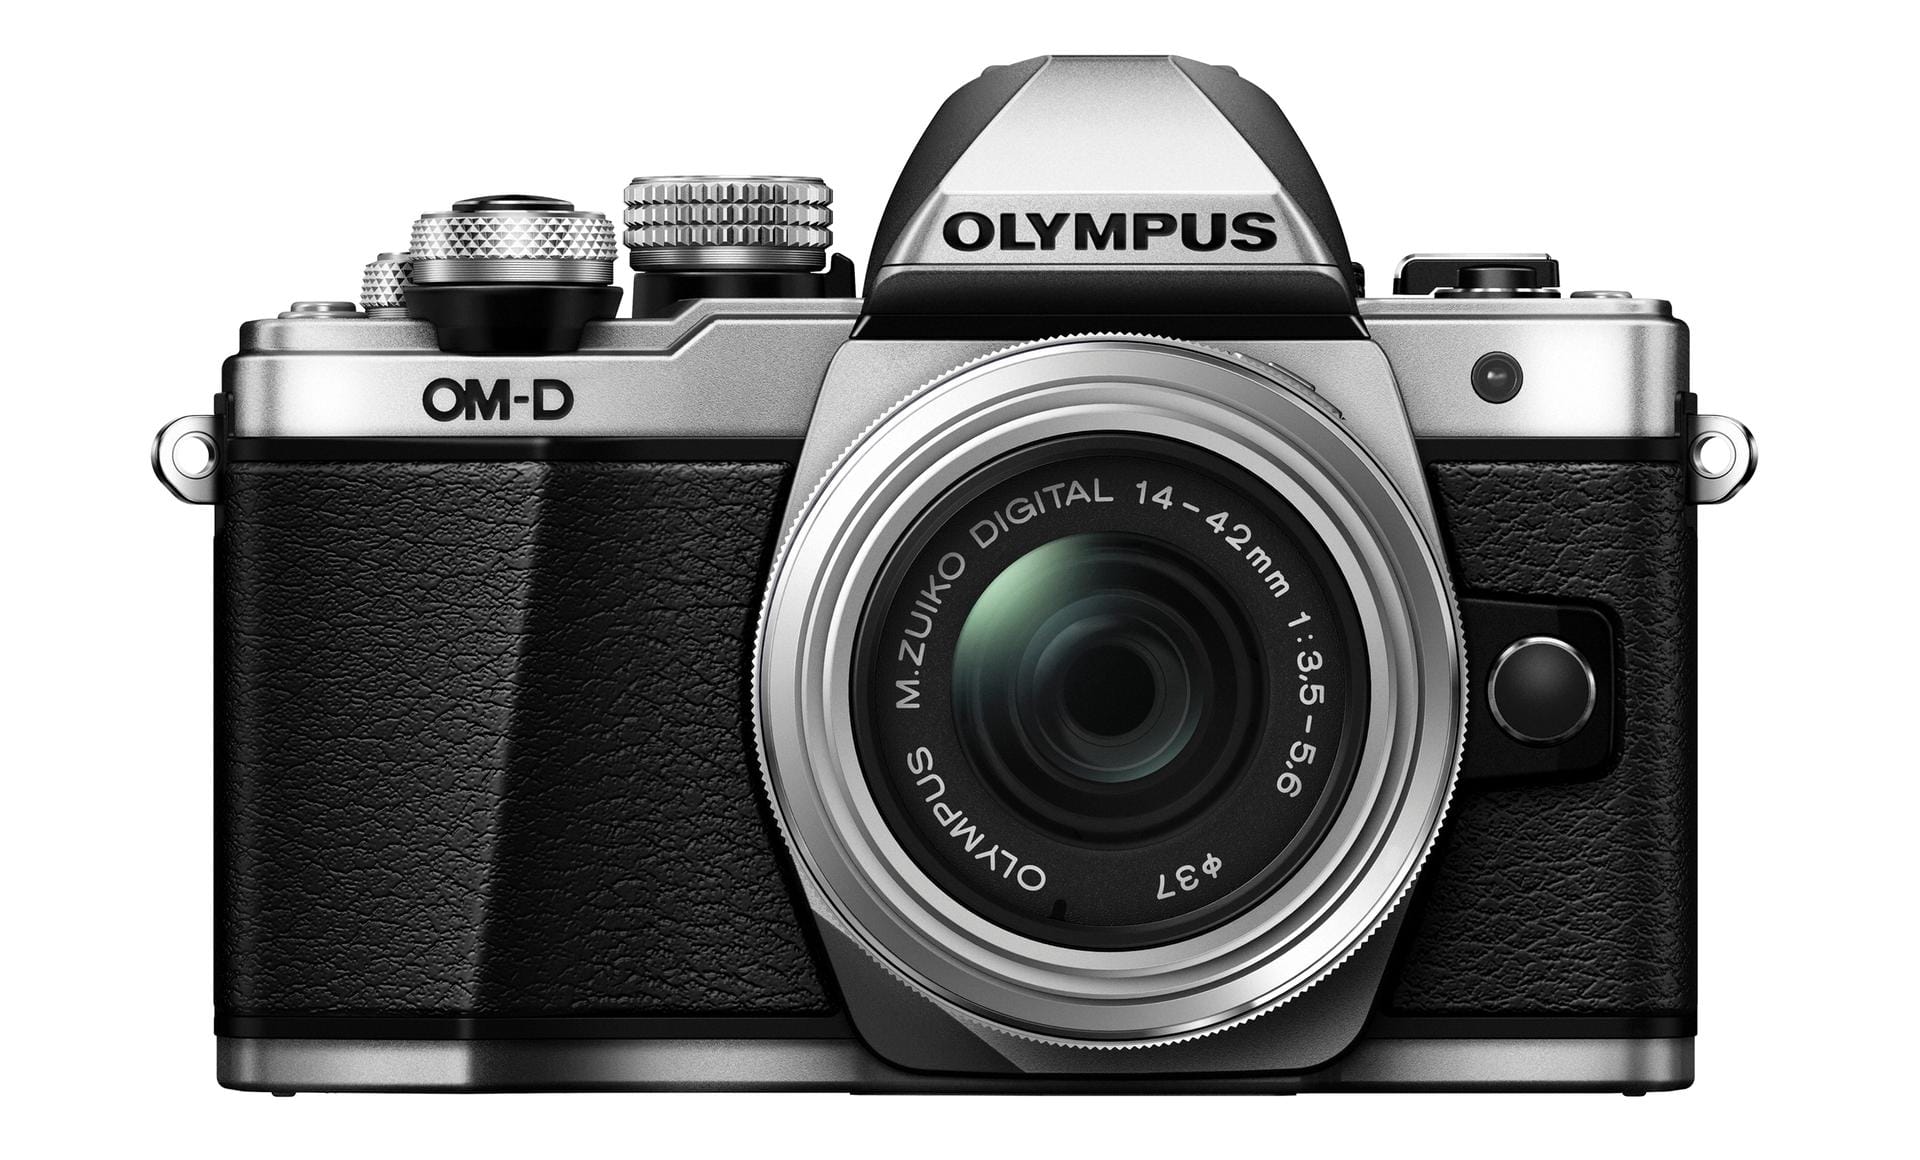 Die kompakte und leichte Olympus OM-D E-M10 Mark II erhielt den Preis für die beste Consumer Systemkamera.